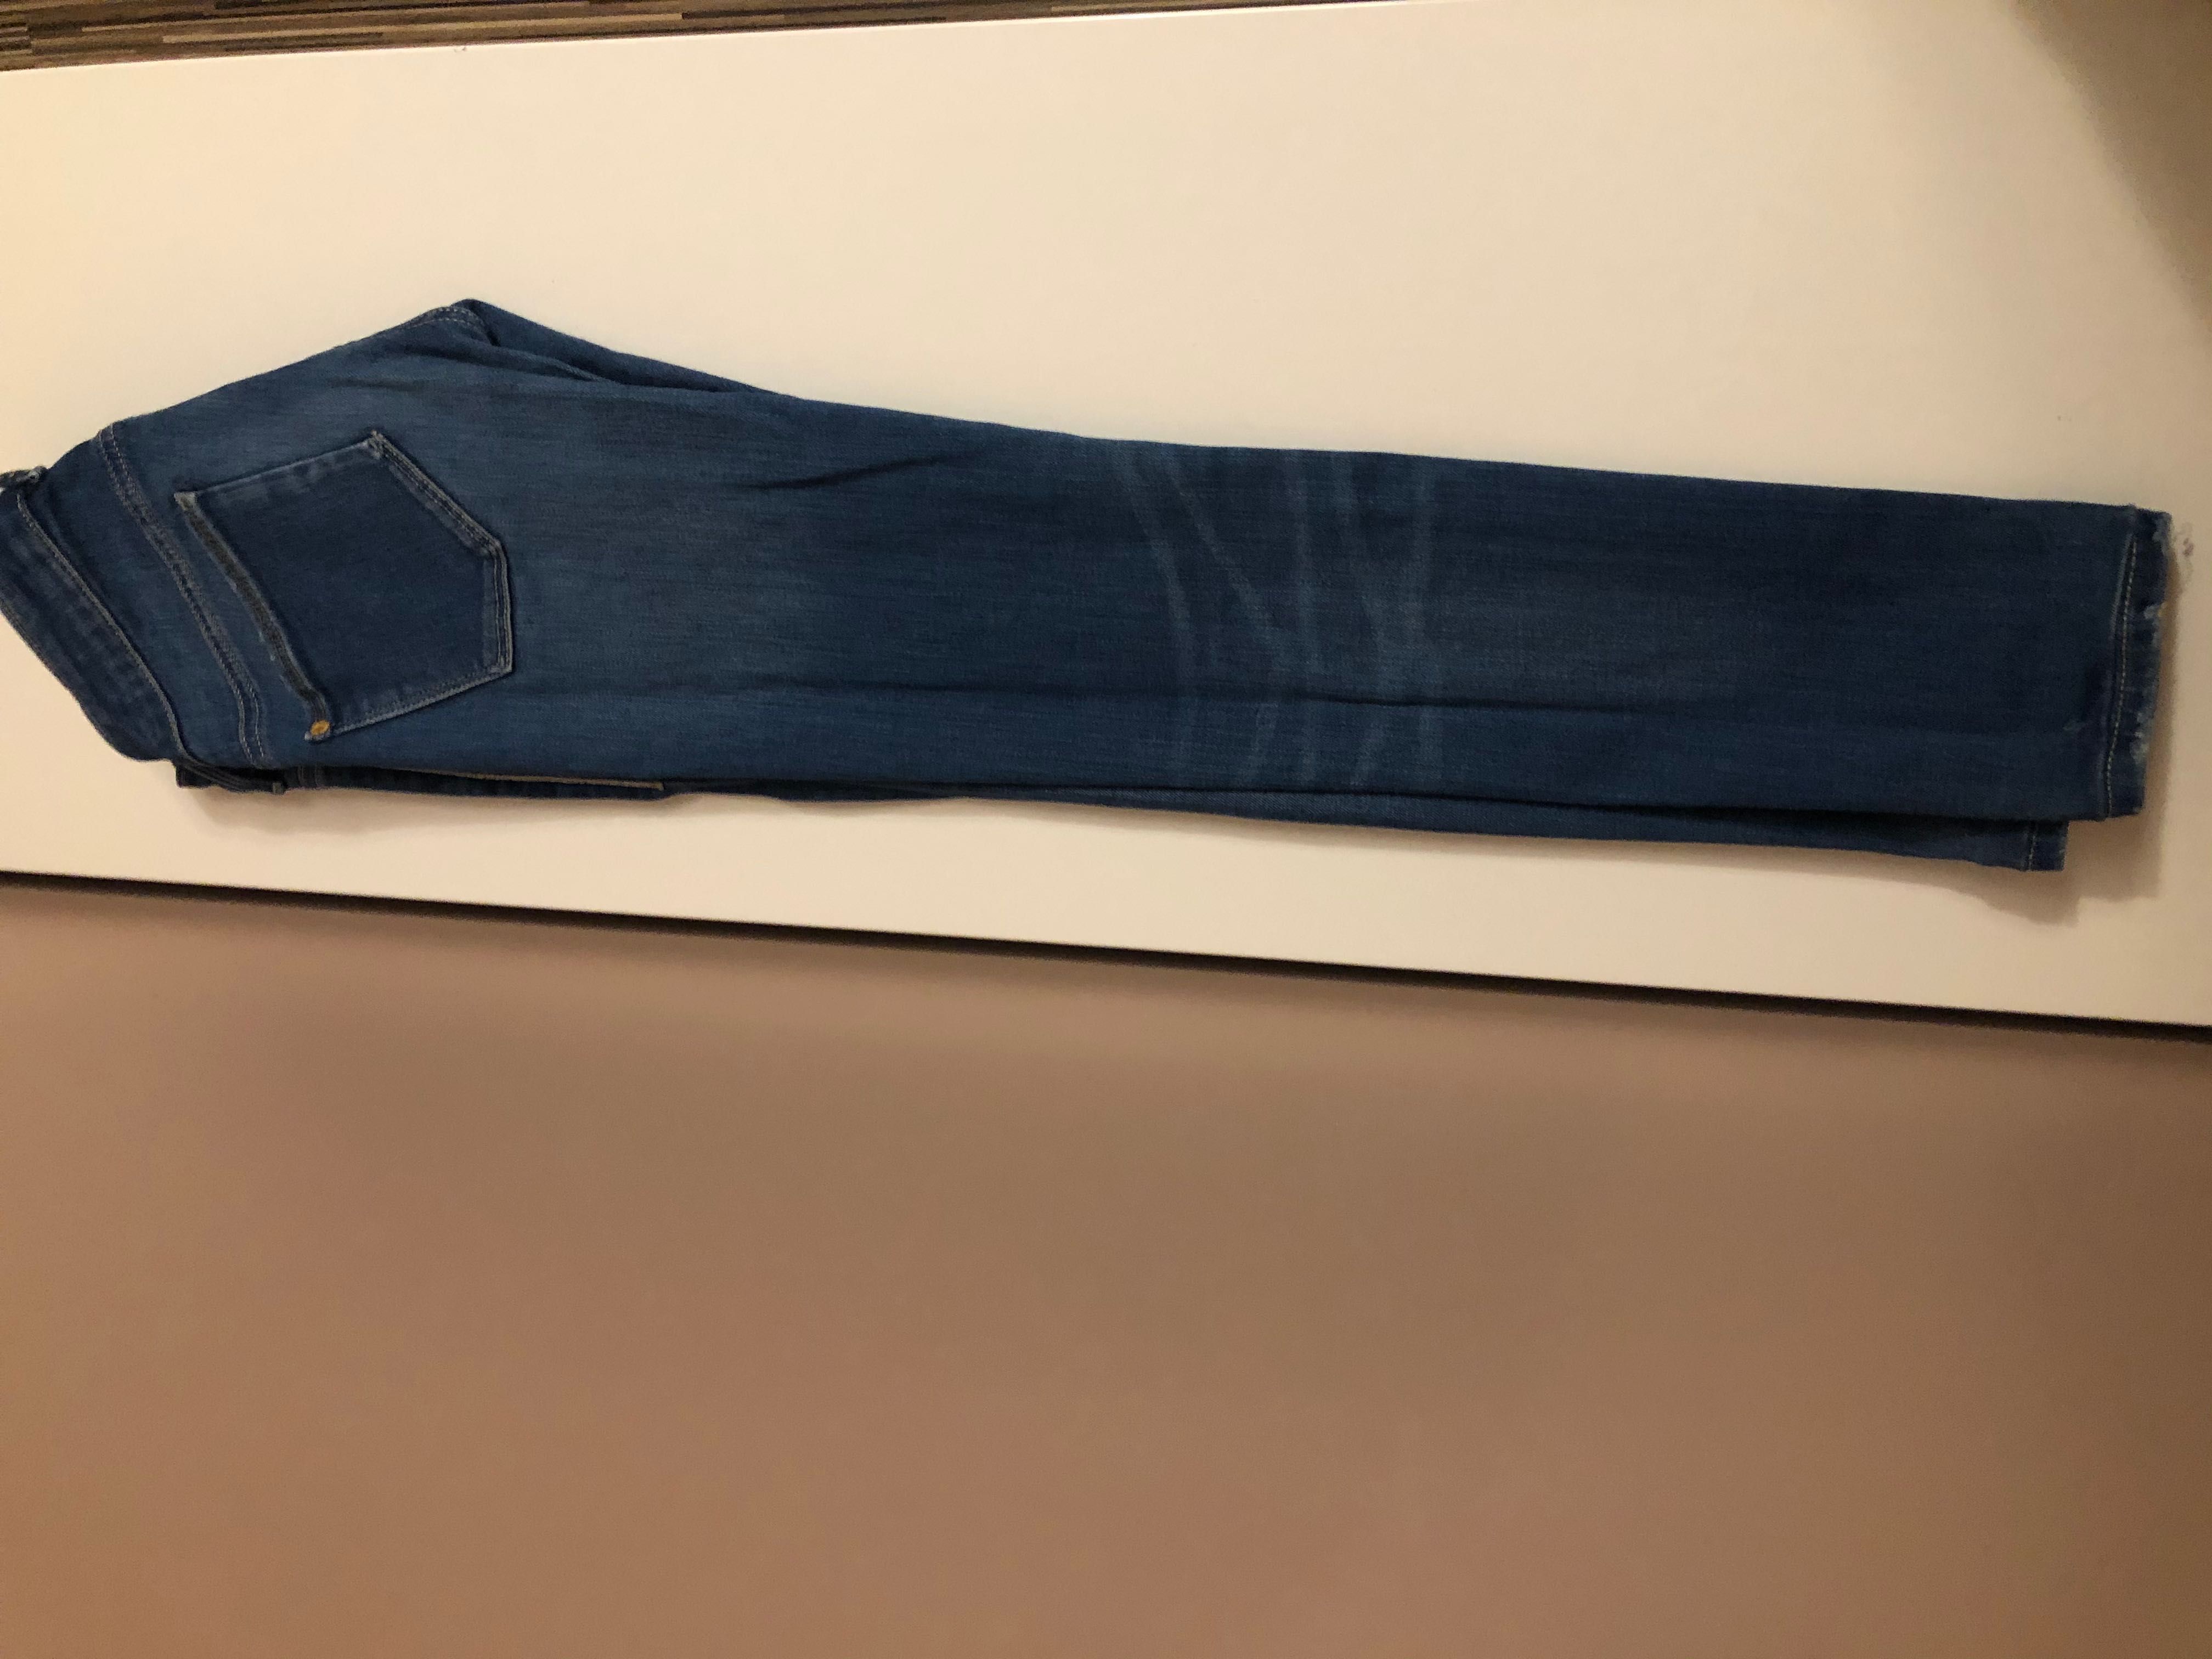 Spodnie jeansowe guess